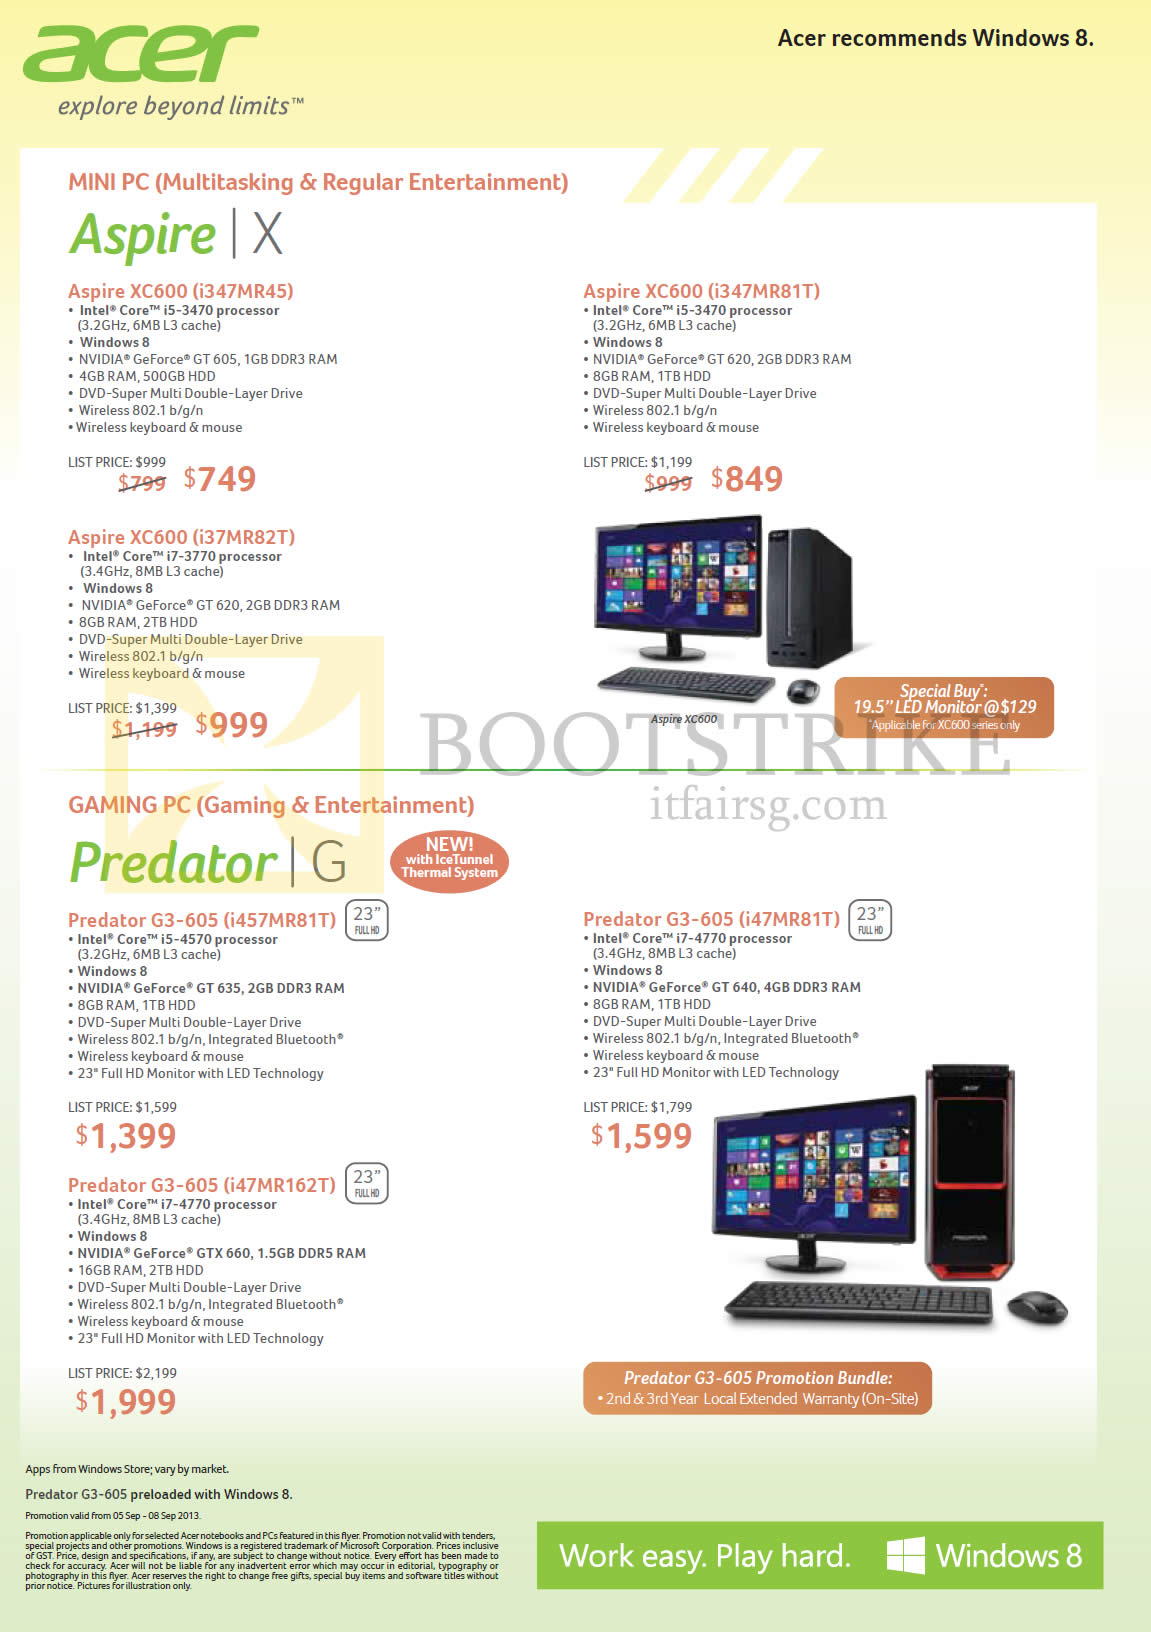 COMEX 2013 price list image brochure of Acer Desktop PCs Aspire XC600 I347MR45 I347MR81T I37MR82T, Predator G3-605 I457MR81T I47MR81T I47MR162T